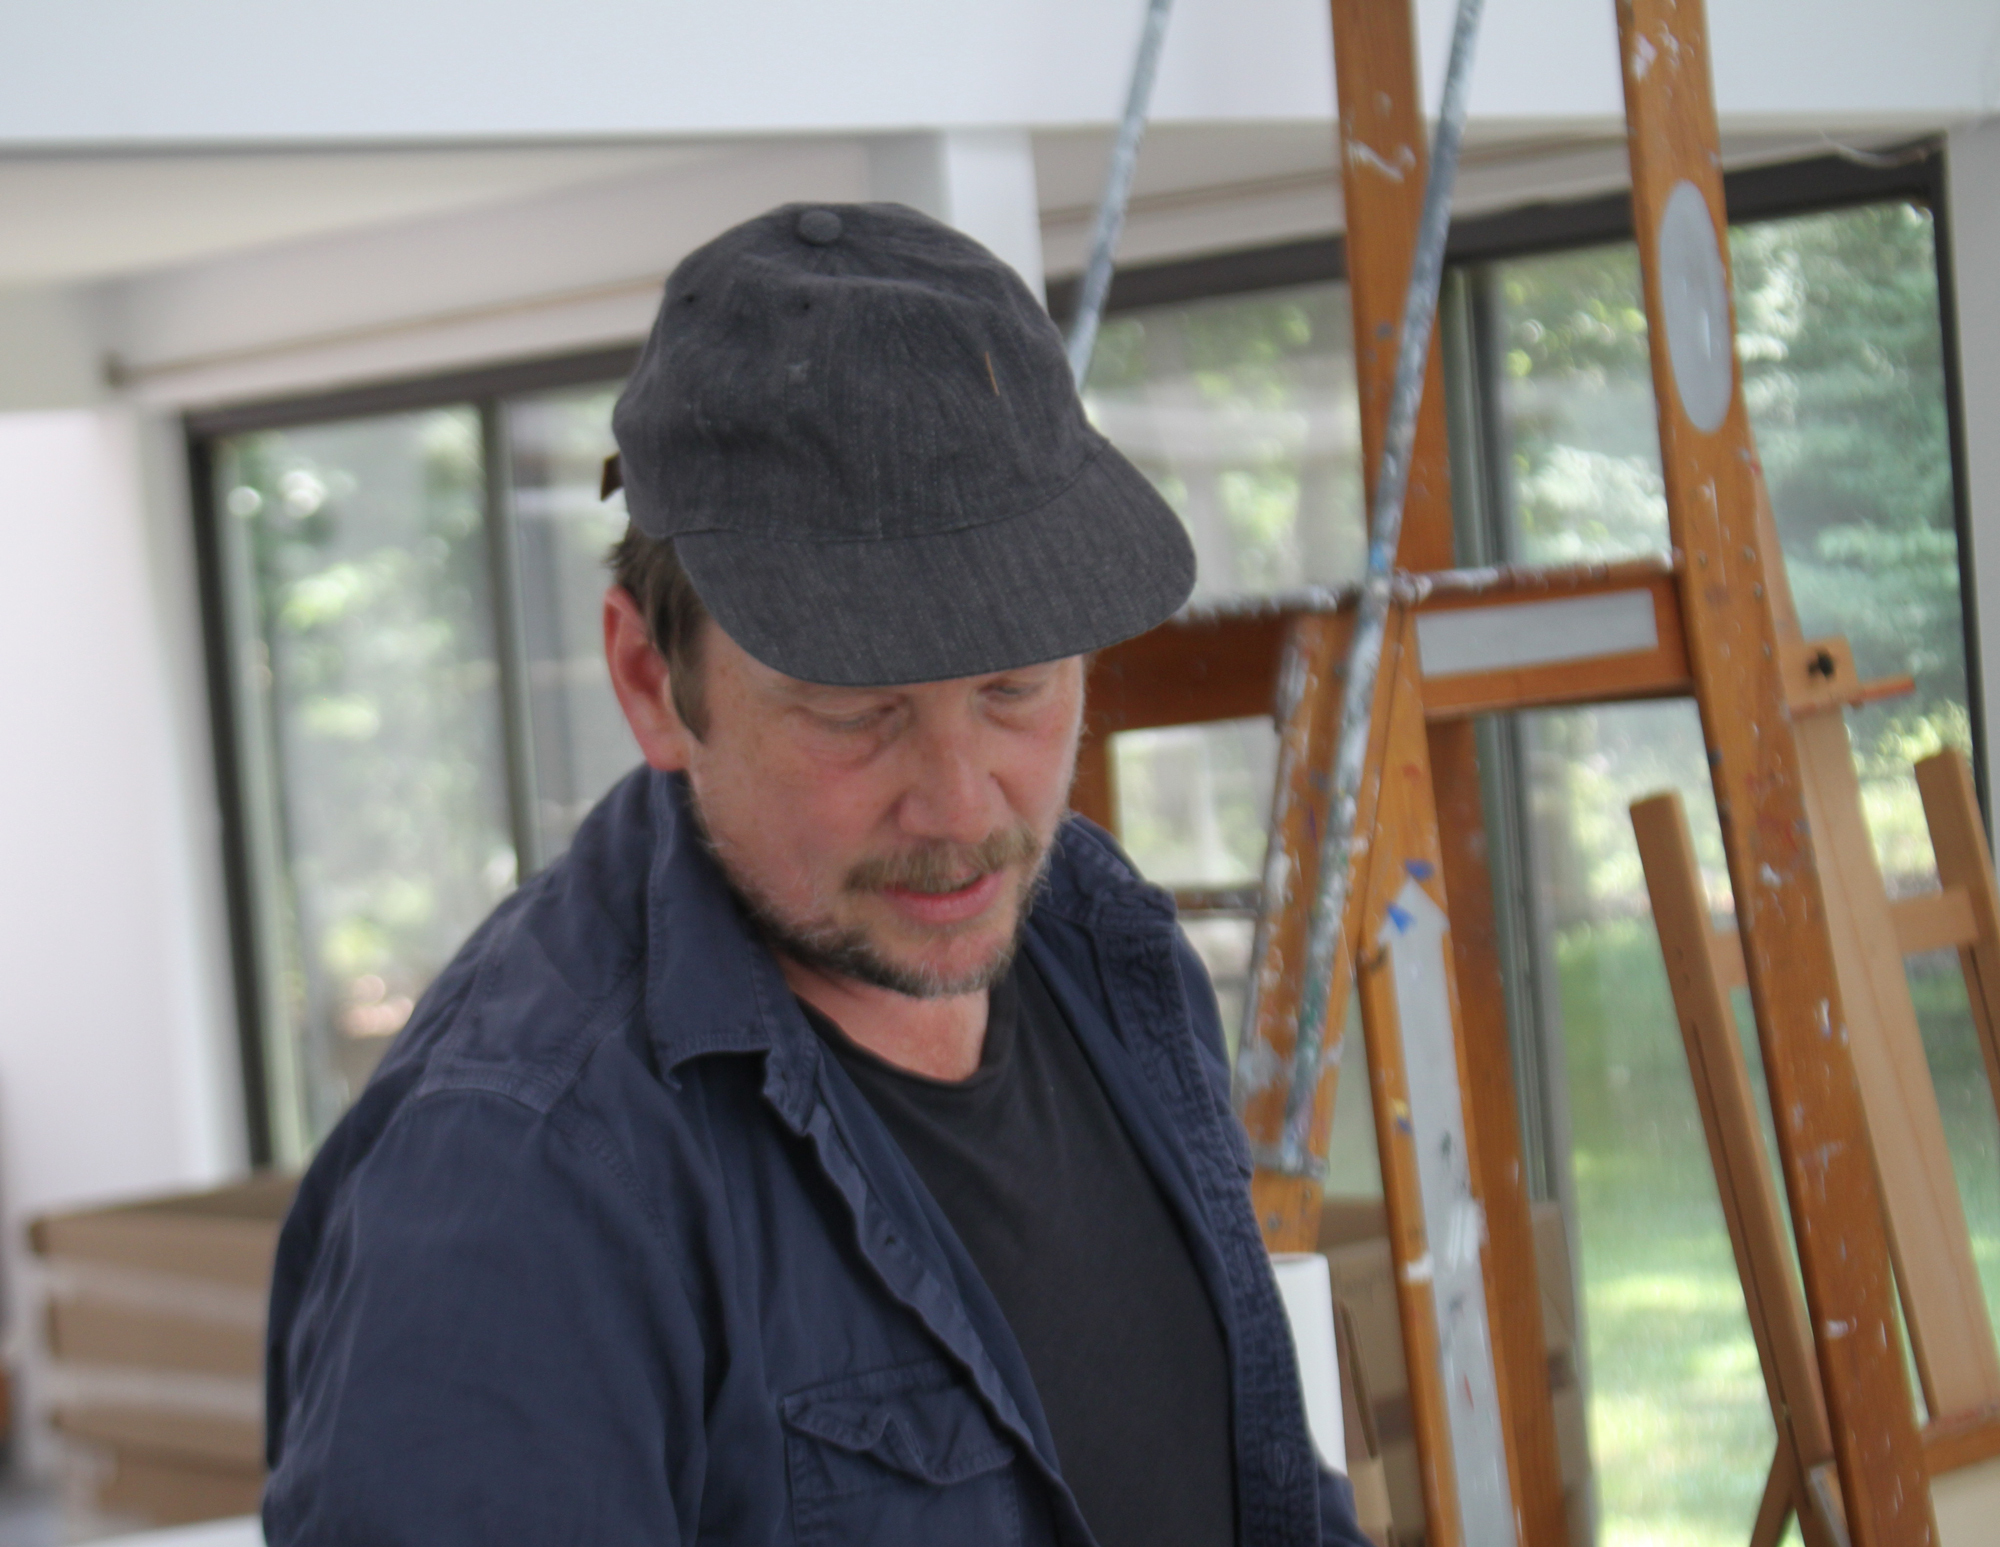 Artist Joe Bradley at work in the Elaine de Kooning house in East Hampton.